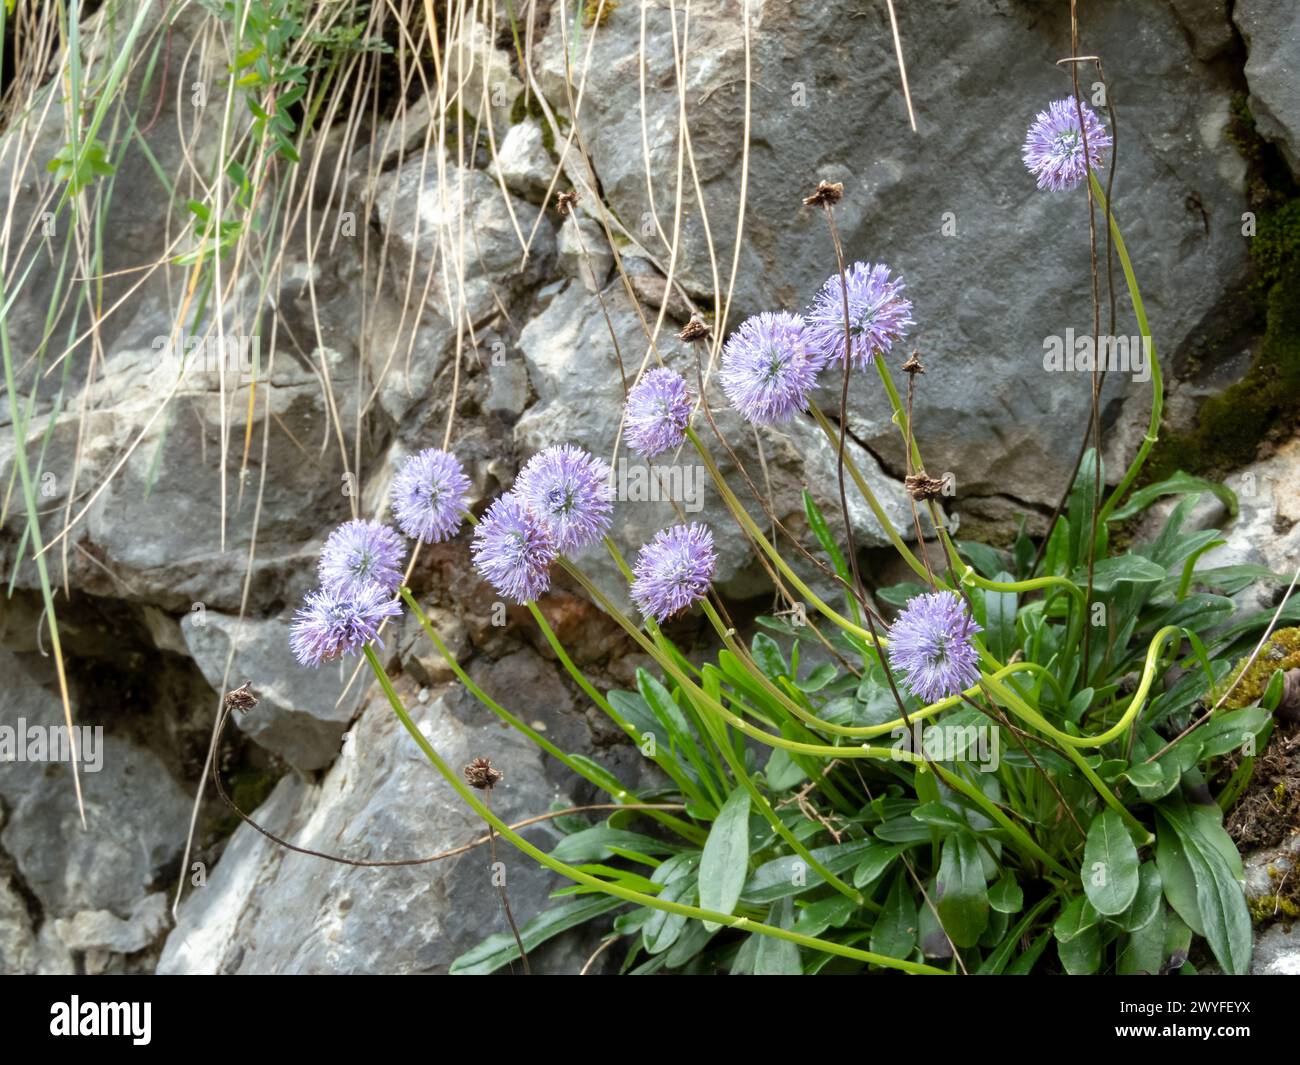 Globularia nudicaulis plant with light purple tightly packed flowers. Wildflowers in the mountain near Oviedo,Asturias,Spain Stock Photo